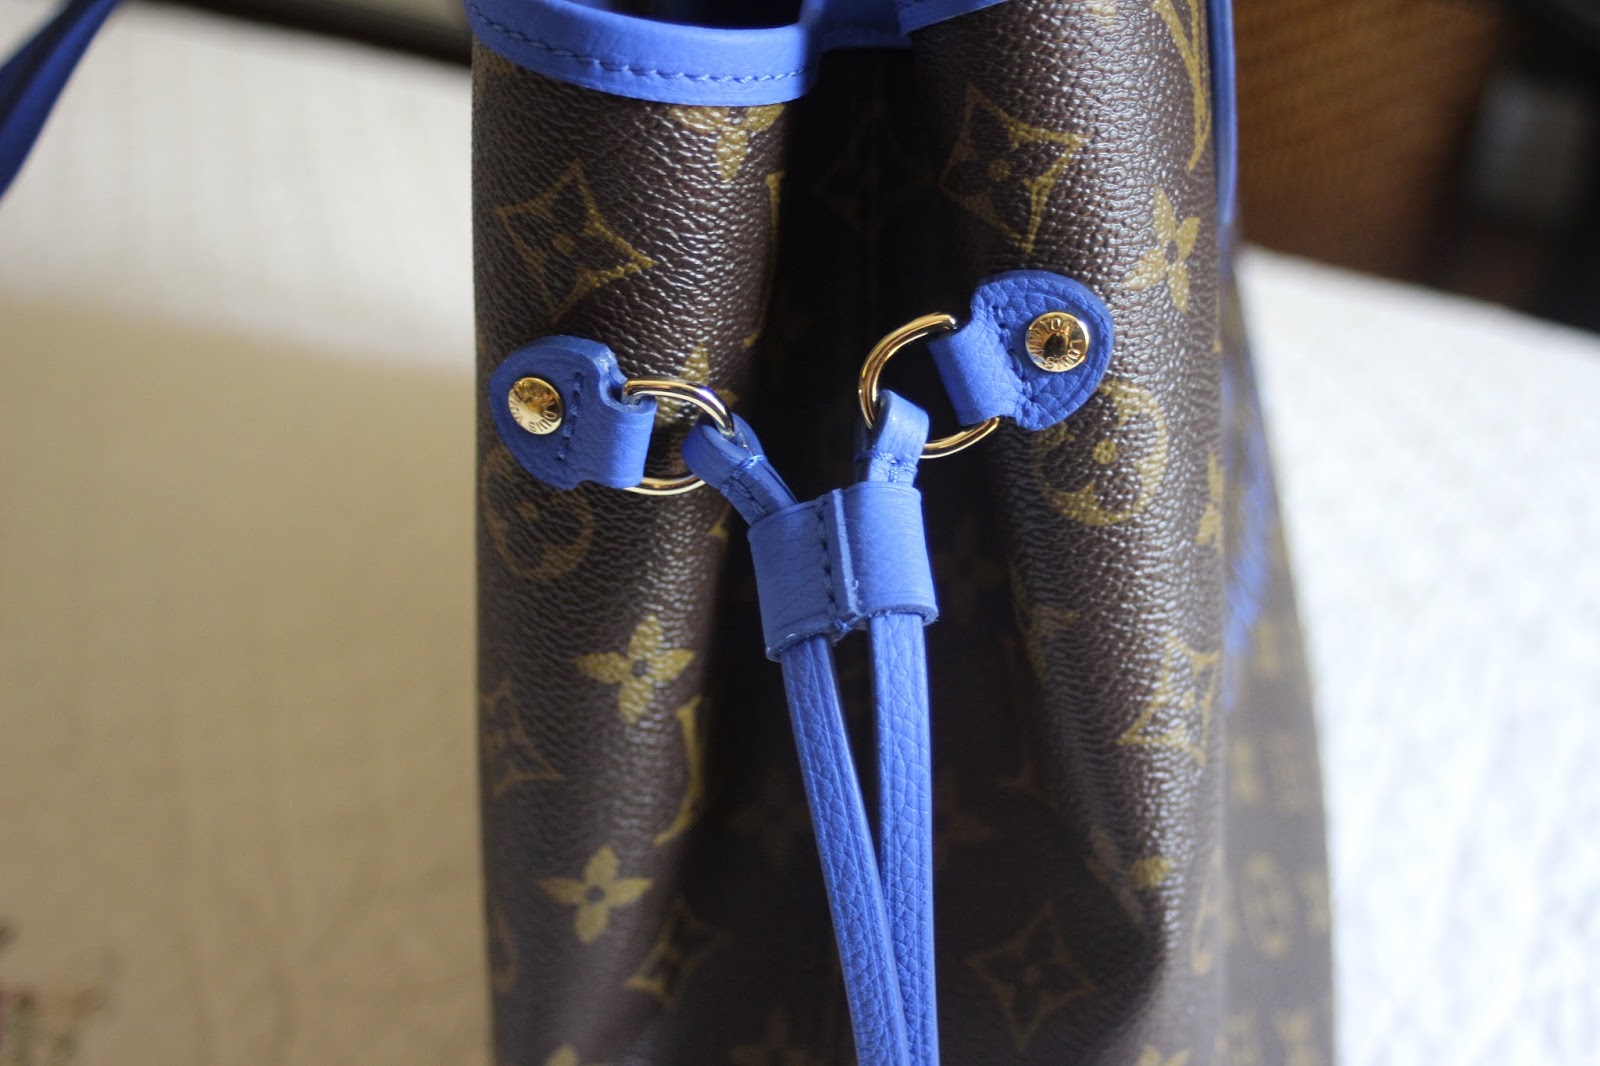 Louis Vuitton Monogram Ikat Neverfull MM Grand Bleu